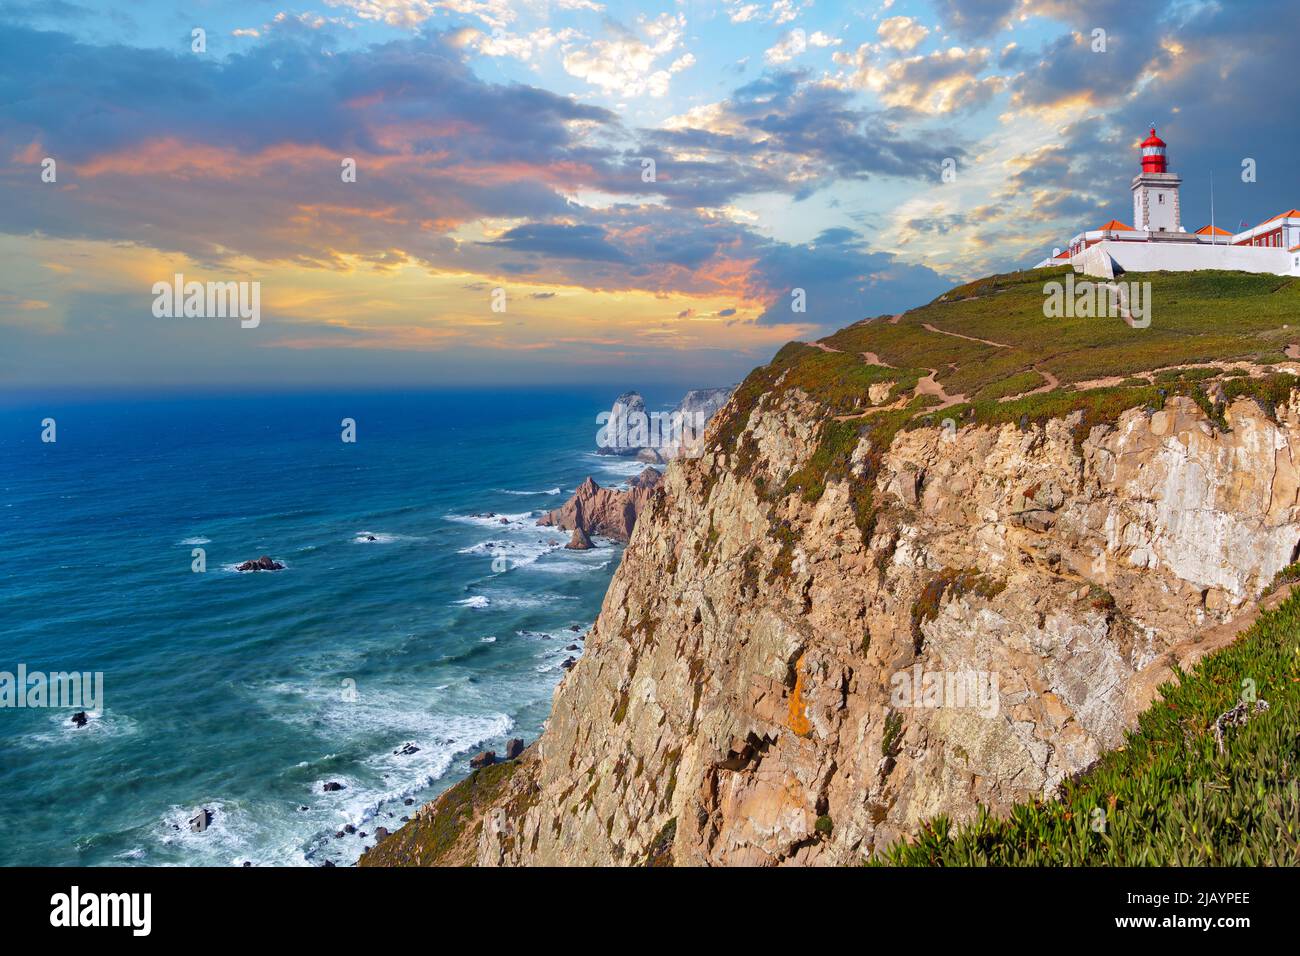 Vista panoramica dell'Oceano Atlantico e delle coste rocciose a Capo Roca in Portogallo. Il faro di Cabo da Roca in cima a Capo Roca. Comune di Sintra Foto Stock